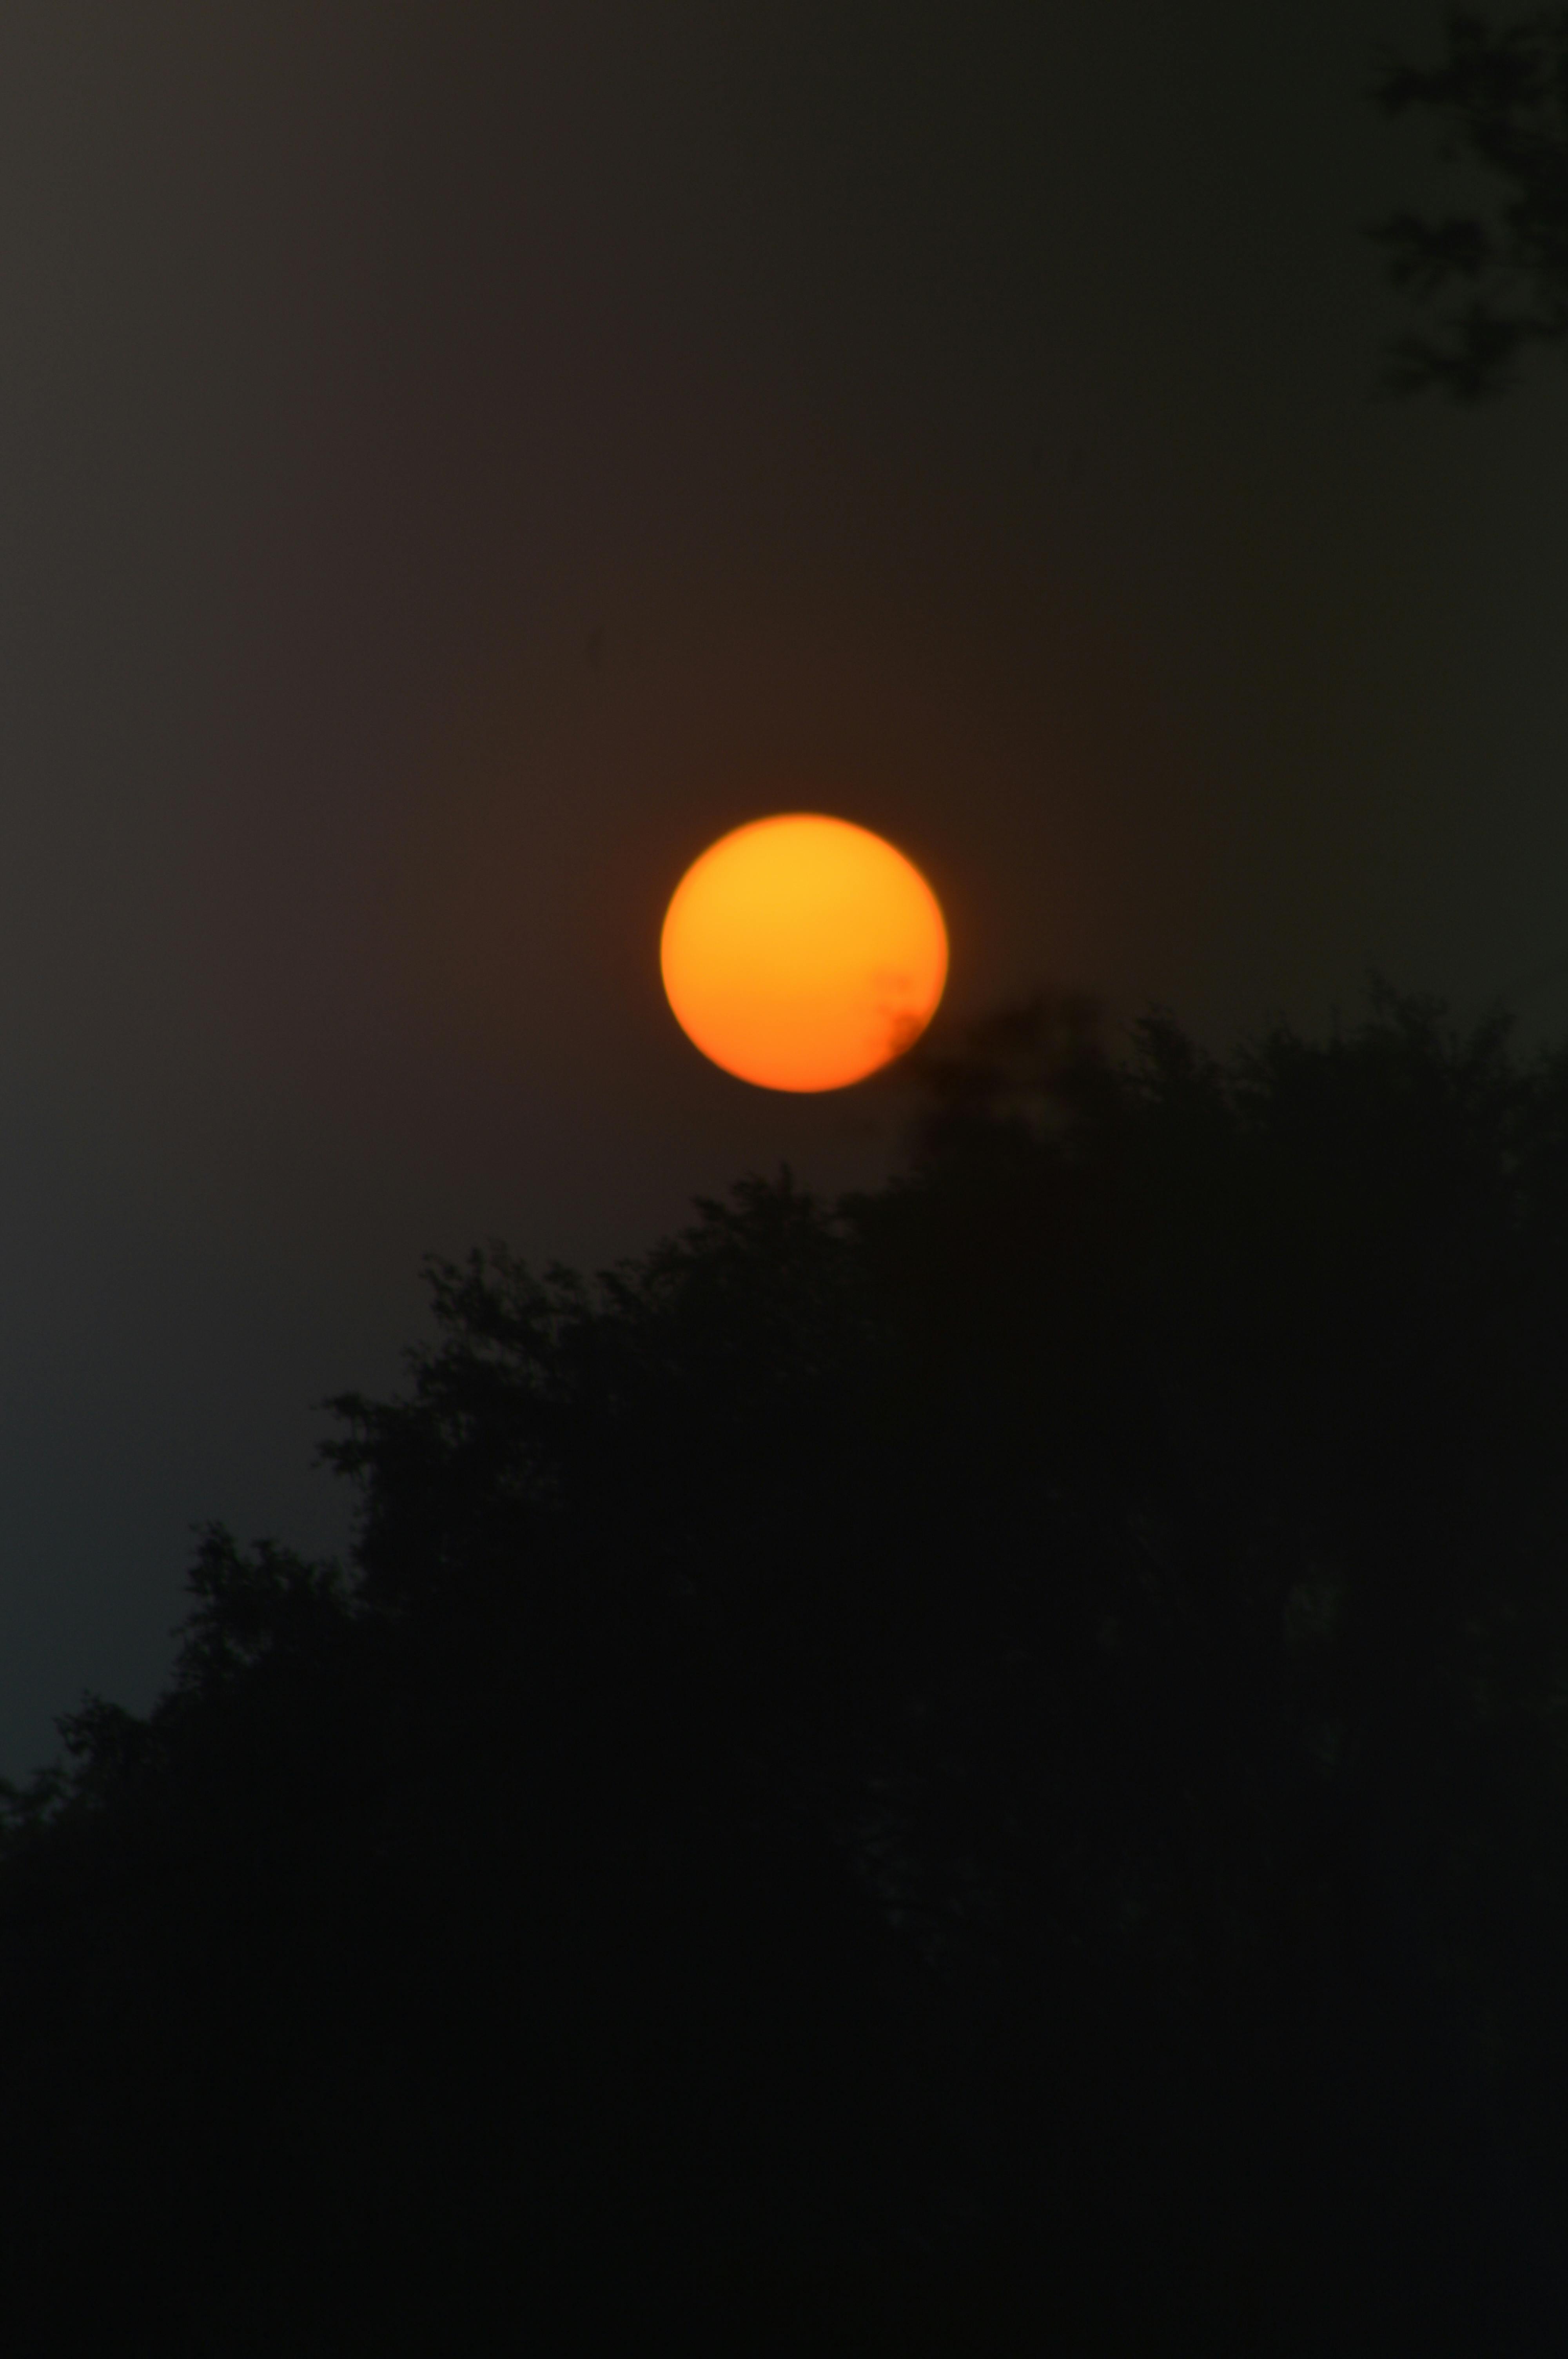 Free stock photo of Goldan sun, SUN BEHIND TREE, sun set